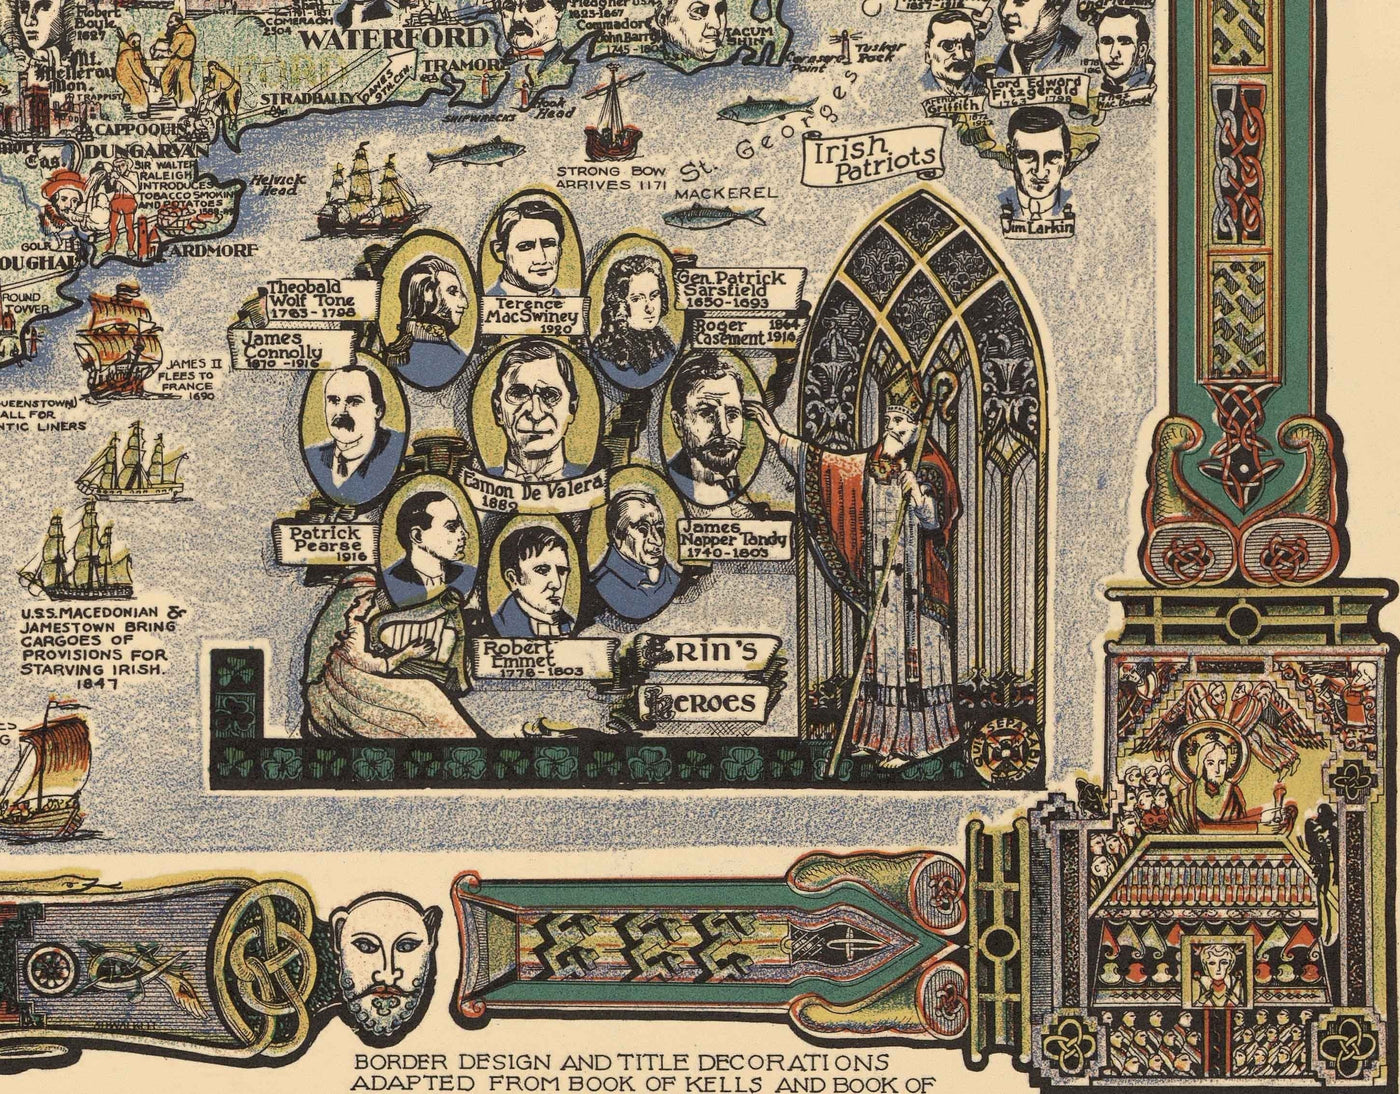 Story Map of Ireland, 1936 - Old Pictorial Chart of Eire - Historische Figuren, Dublin, Kork, Belfast, Bernard Shaw